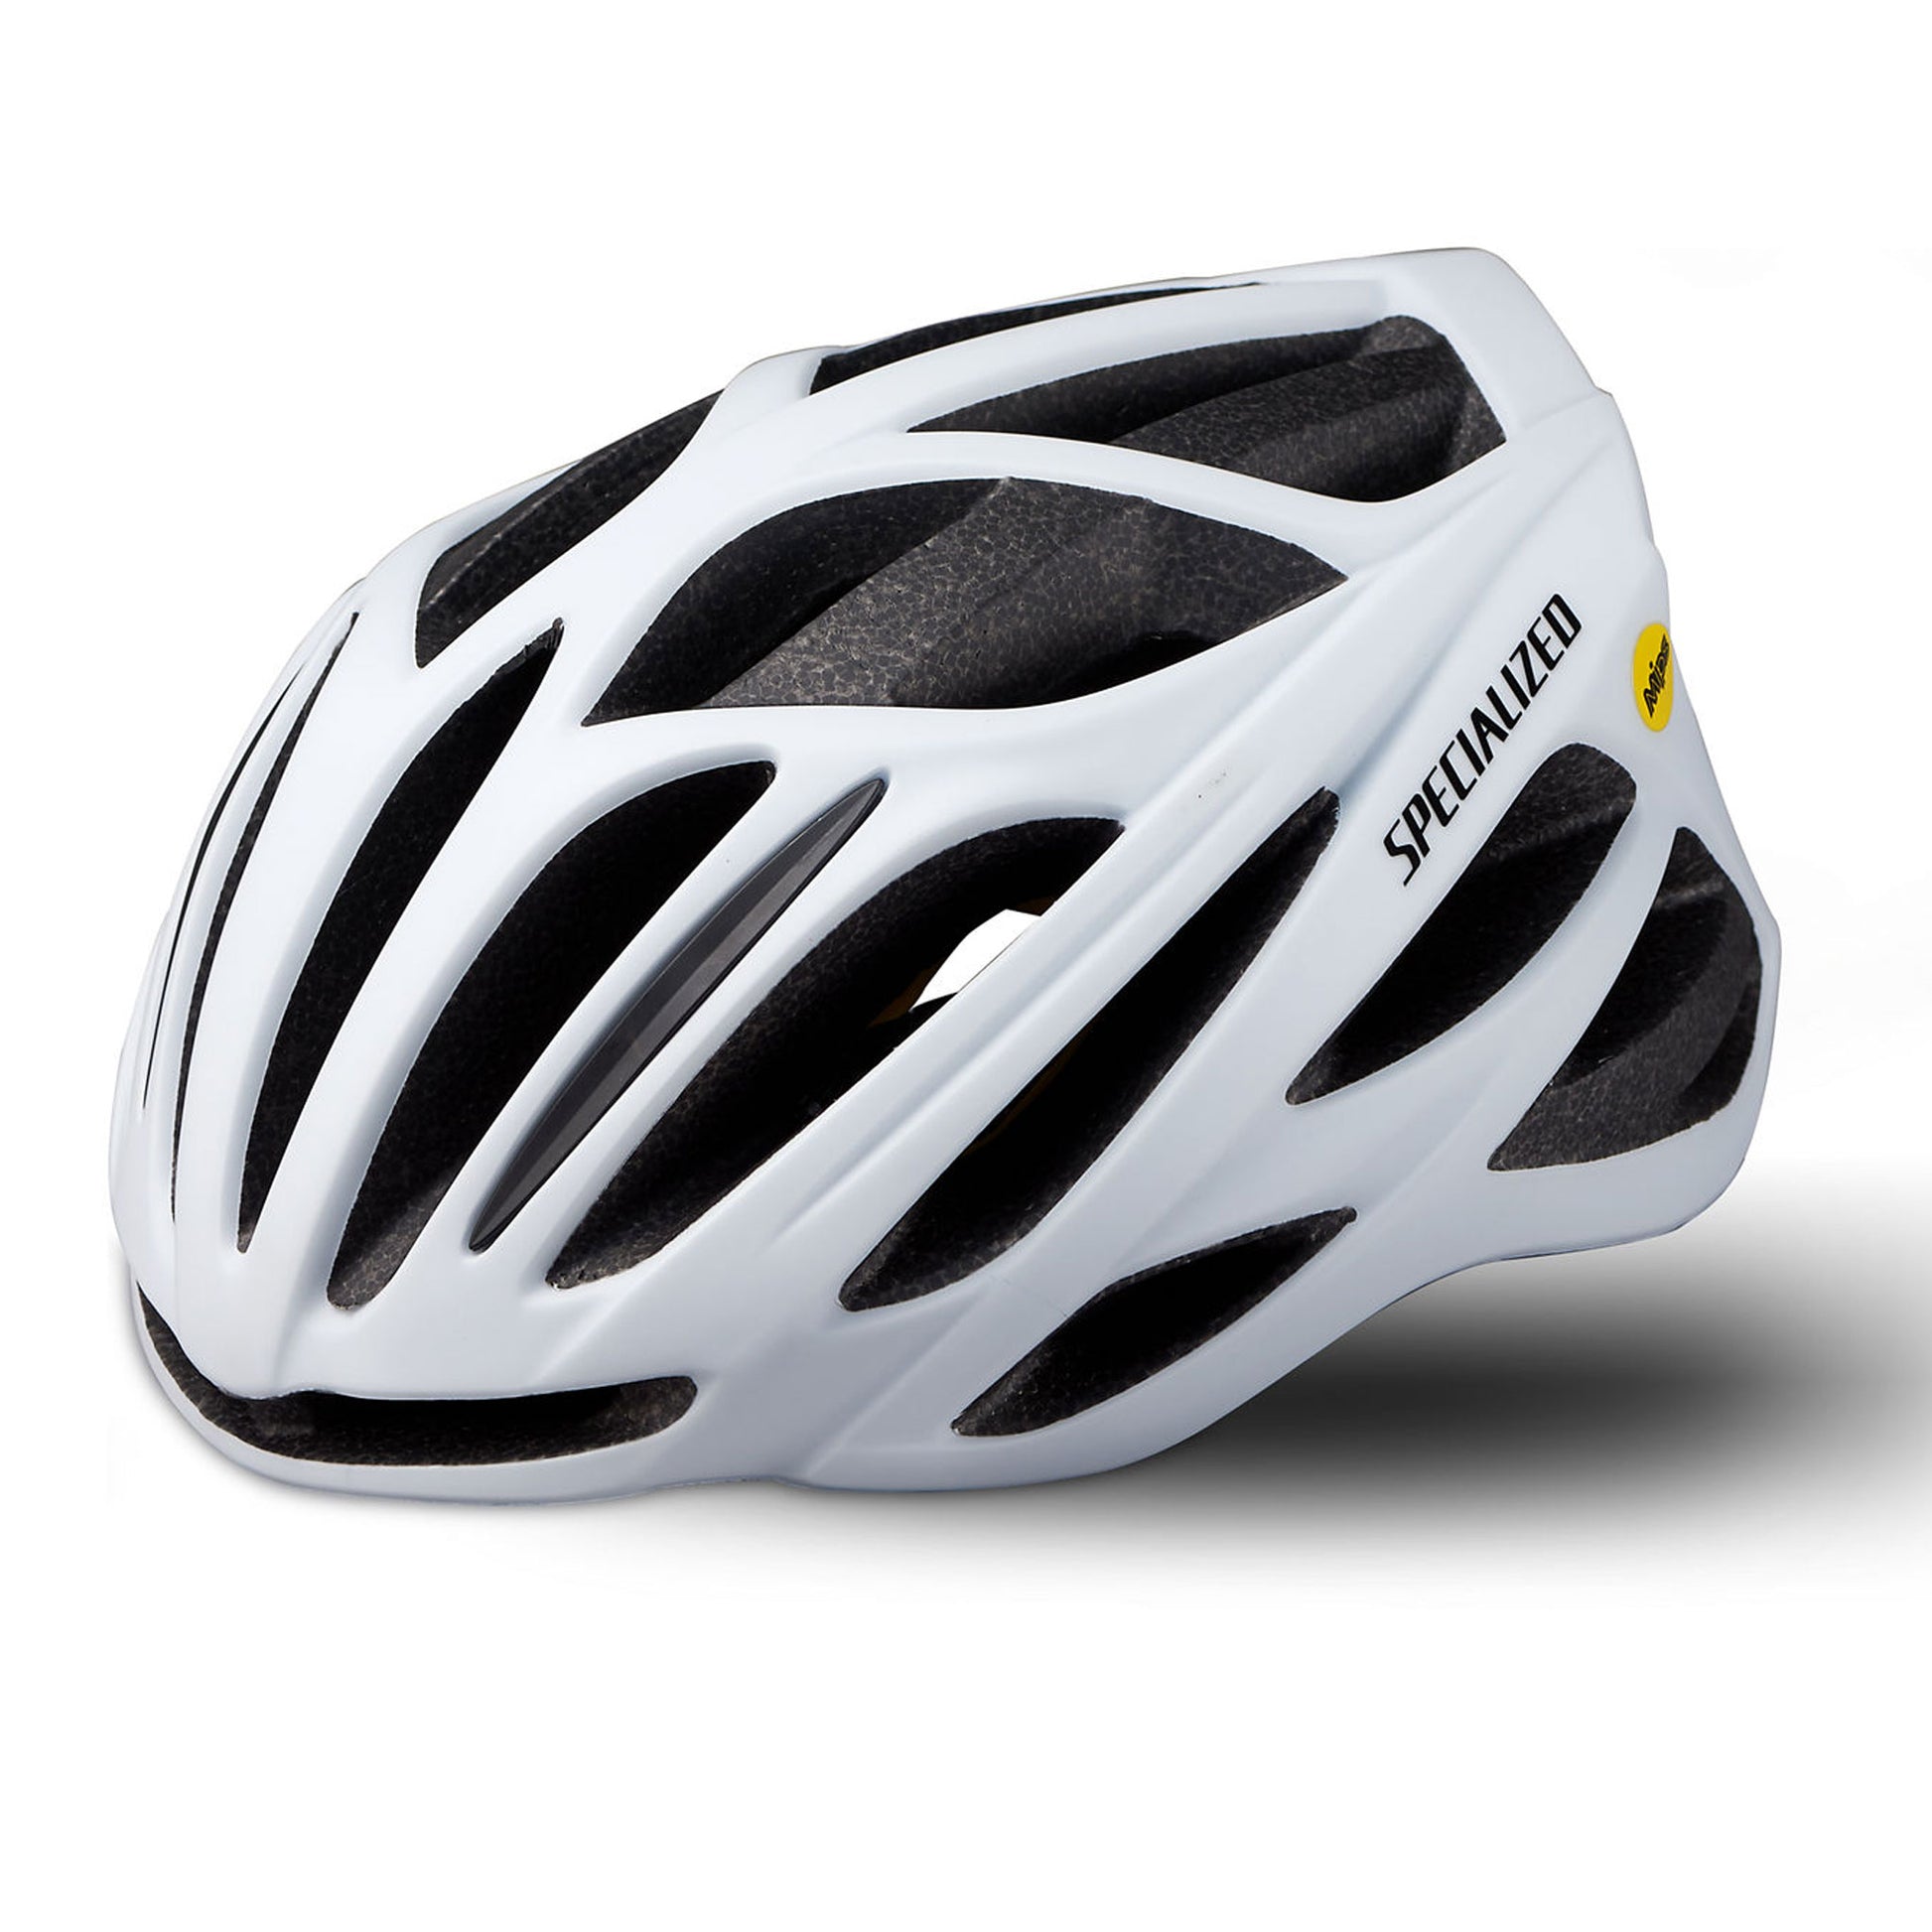 Specialized Echelon II Mips Road Cycling Helmet, Matt White